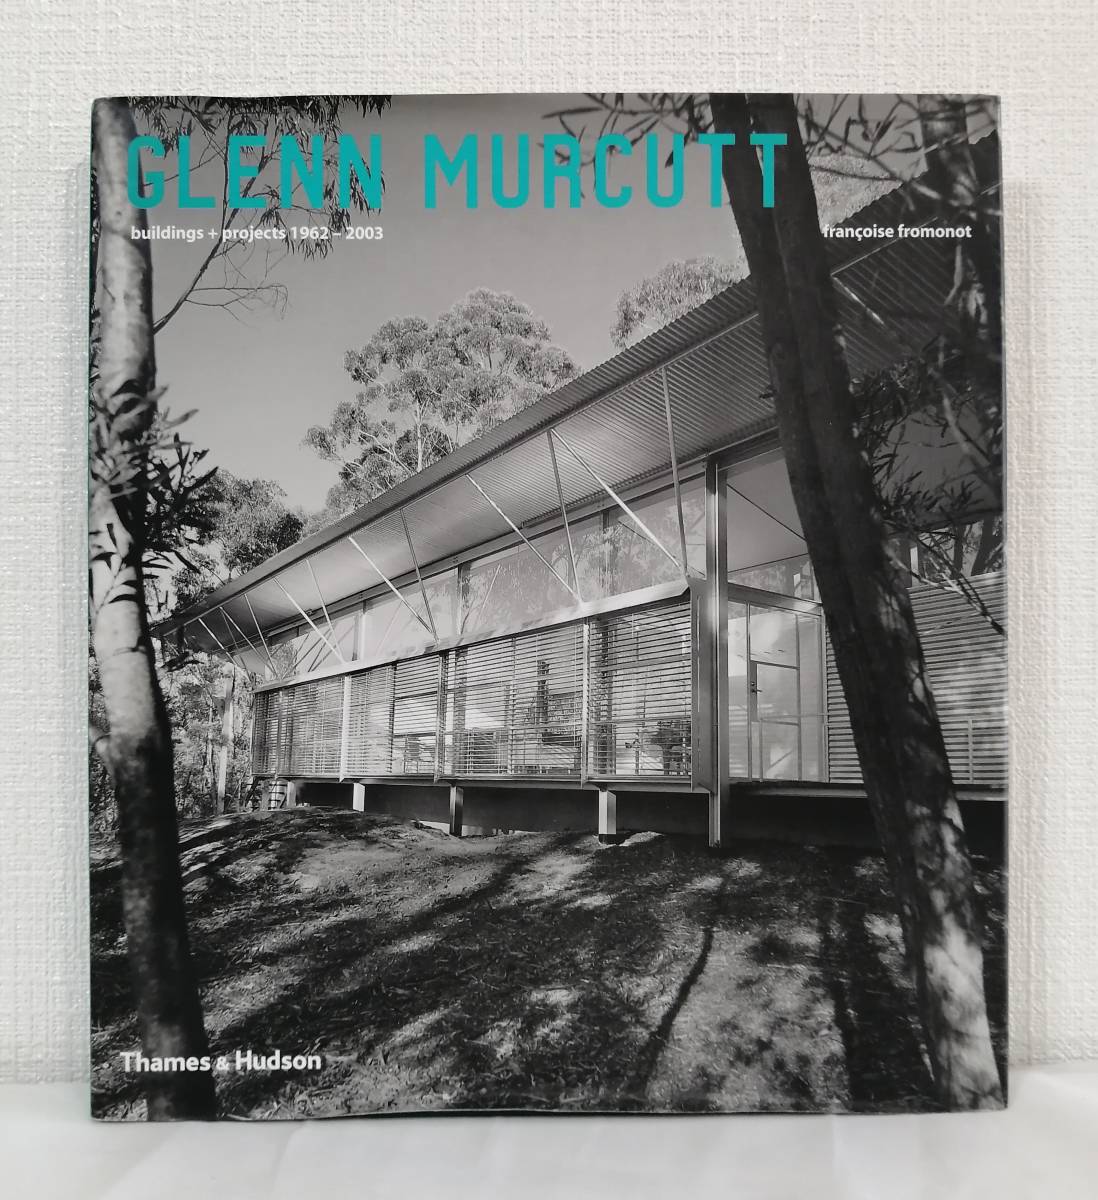 建■ グレン・マーカット 建築作品集 Glenn Murcutt : buildings + projects 1962-2003 Thames & Hudson